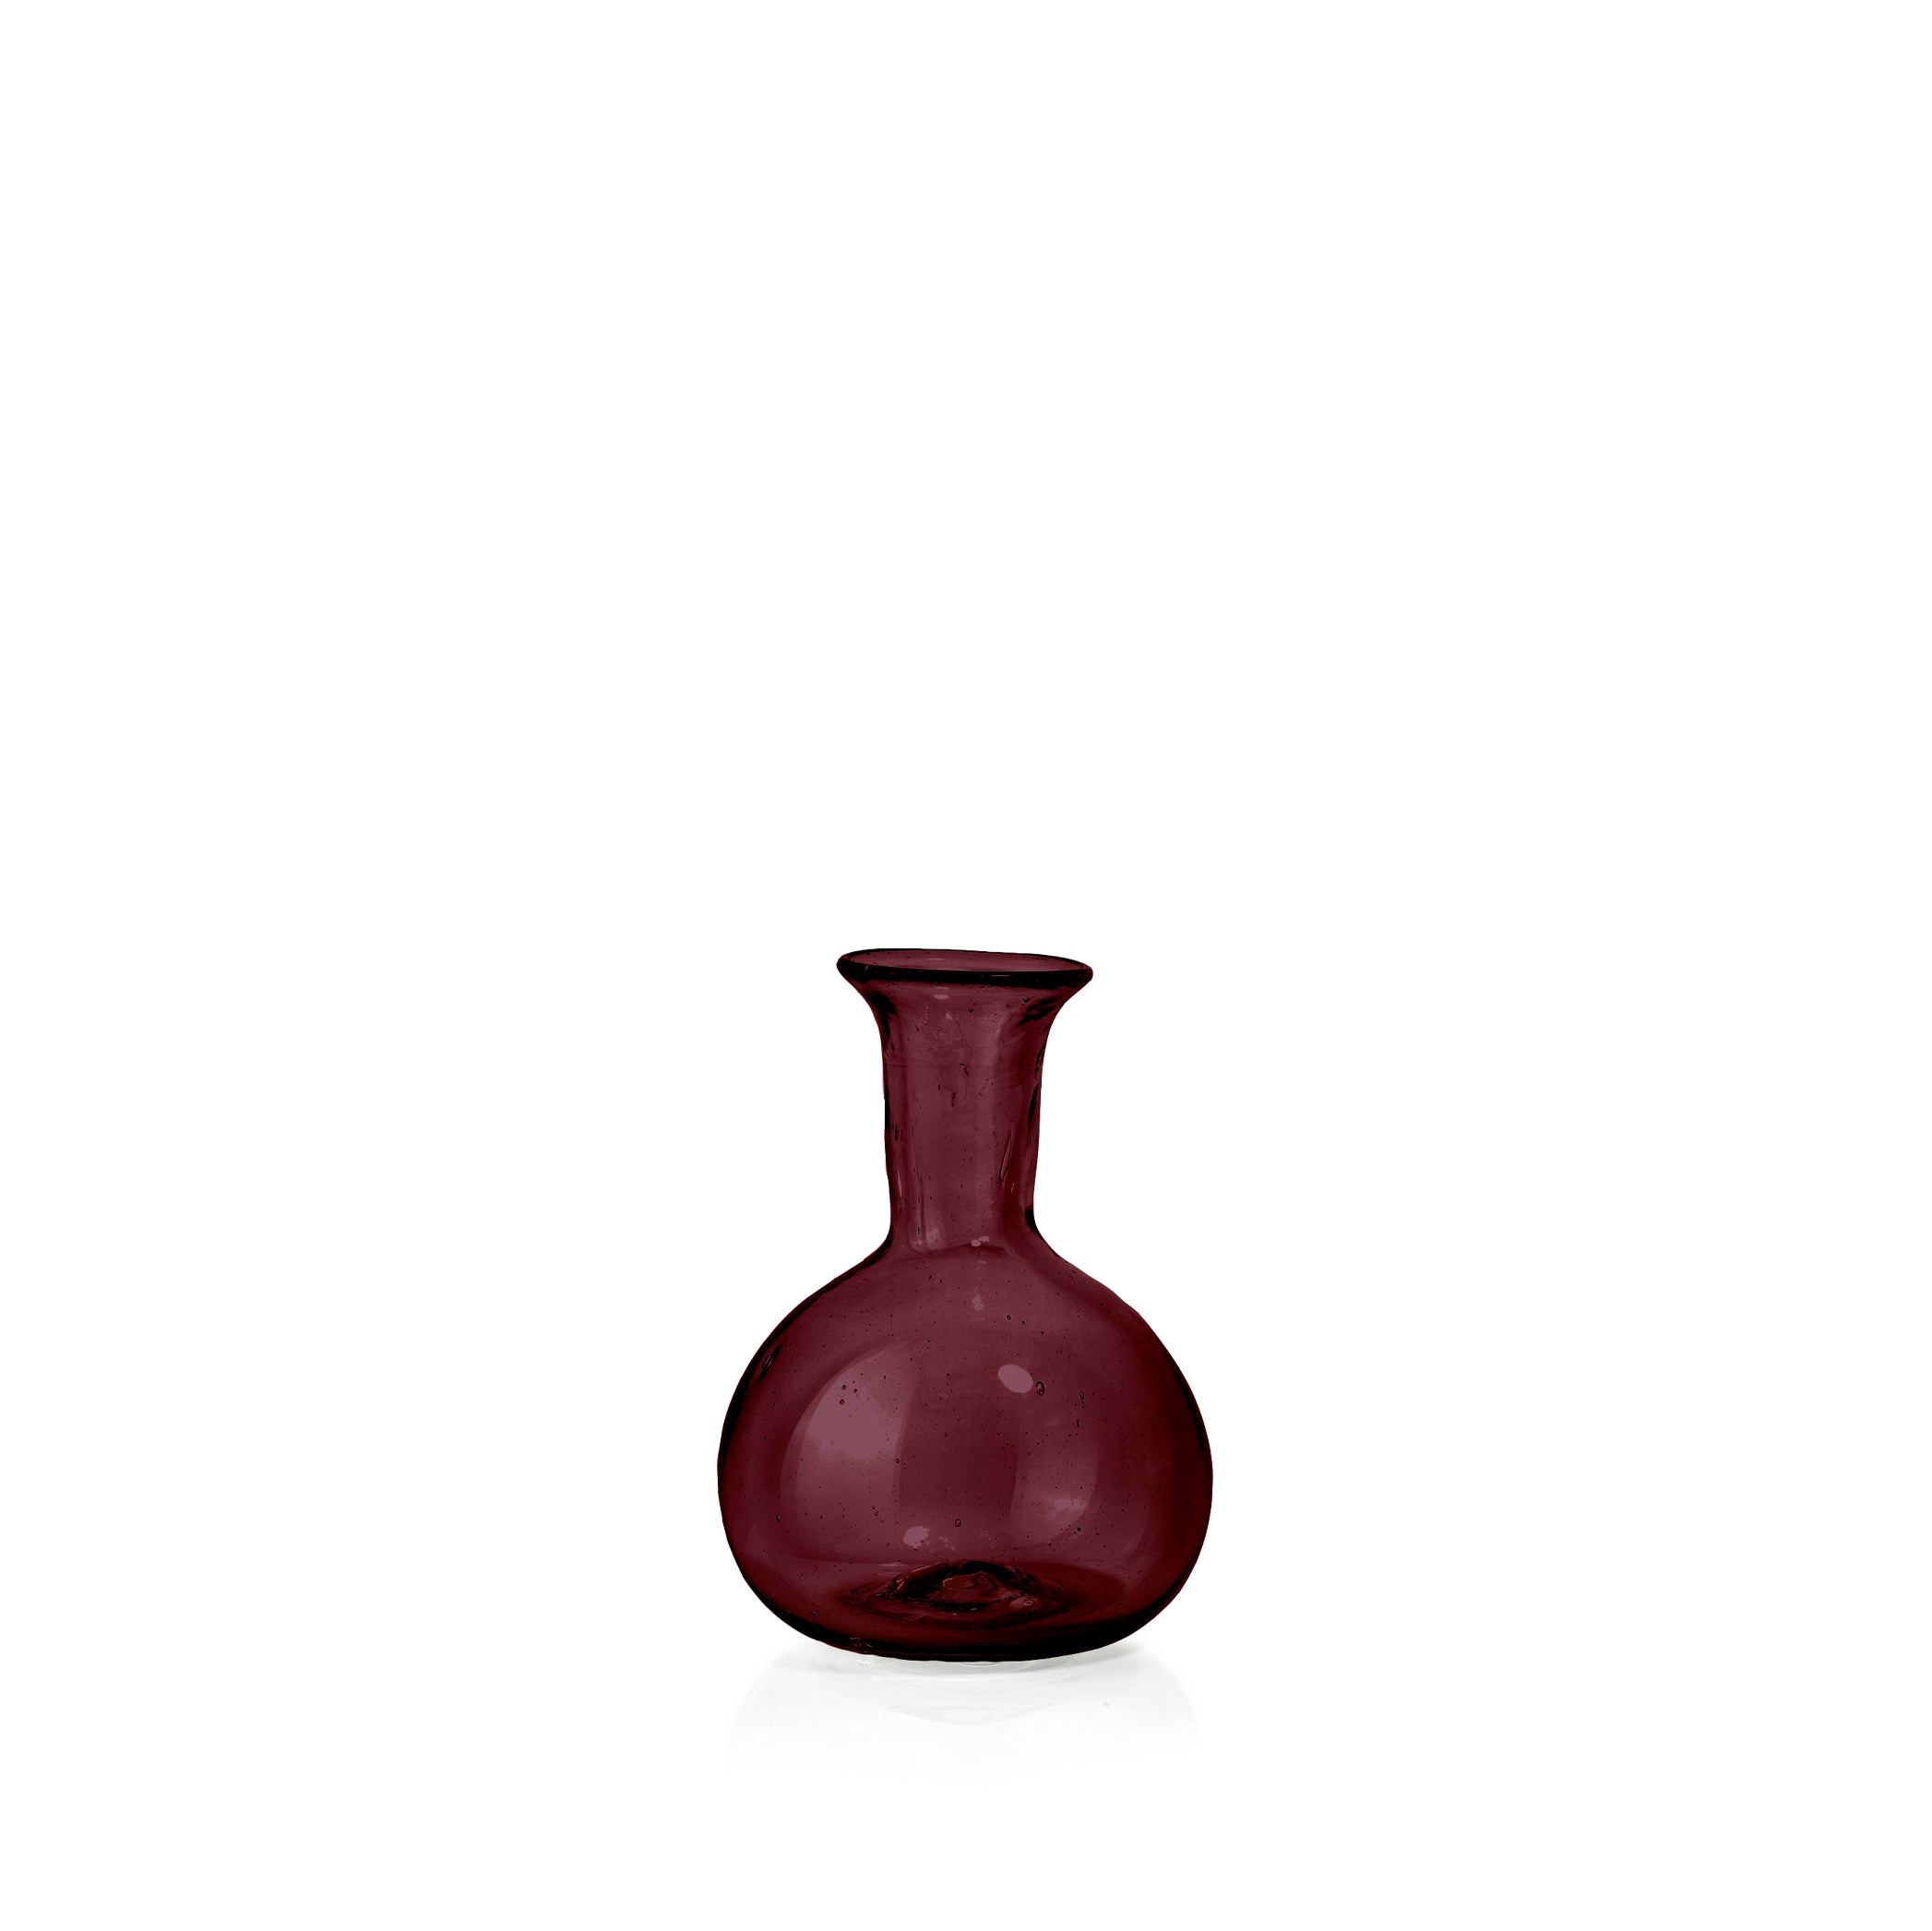 Handblown Small Round Bud Vase in Raspberry Red, 9cm